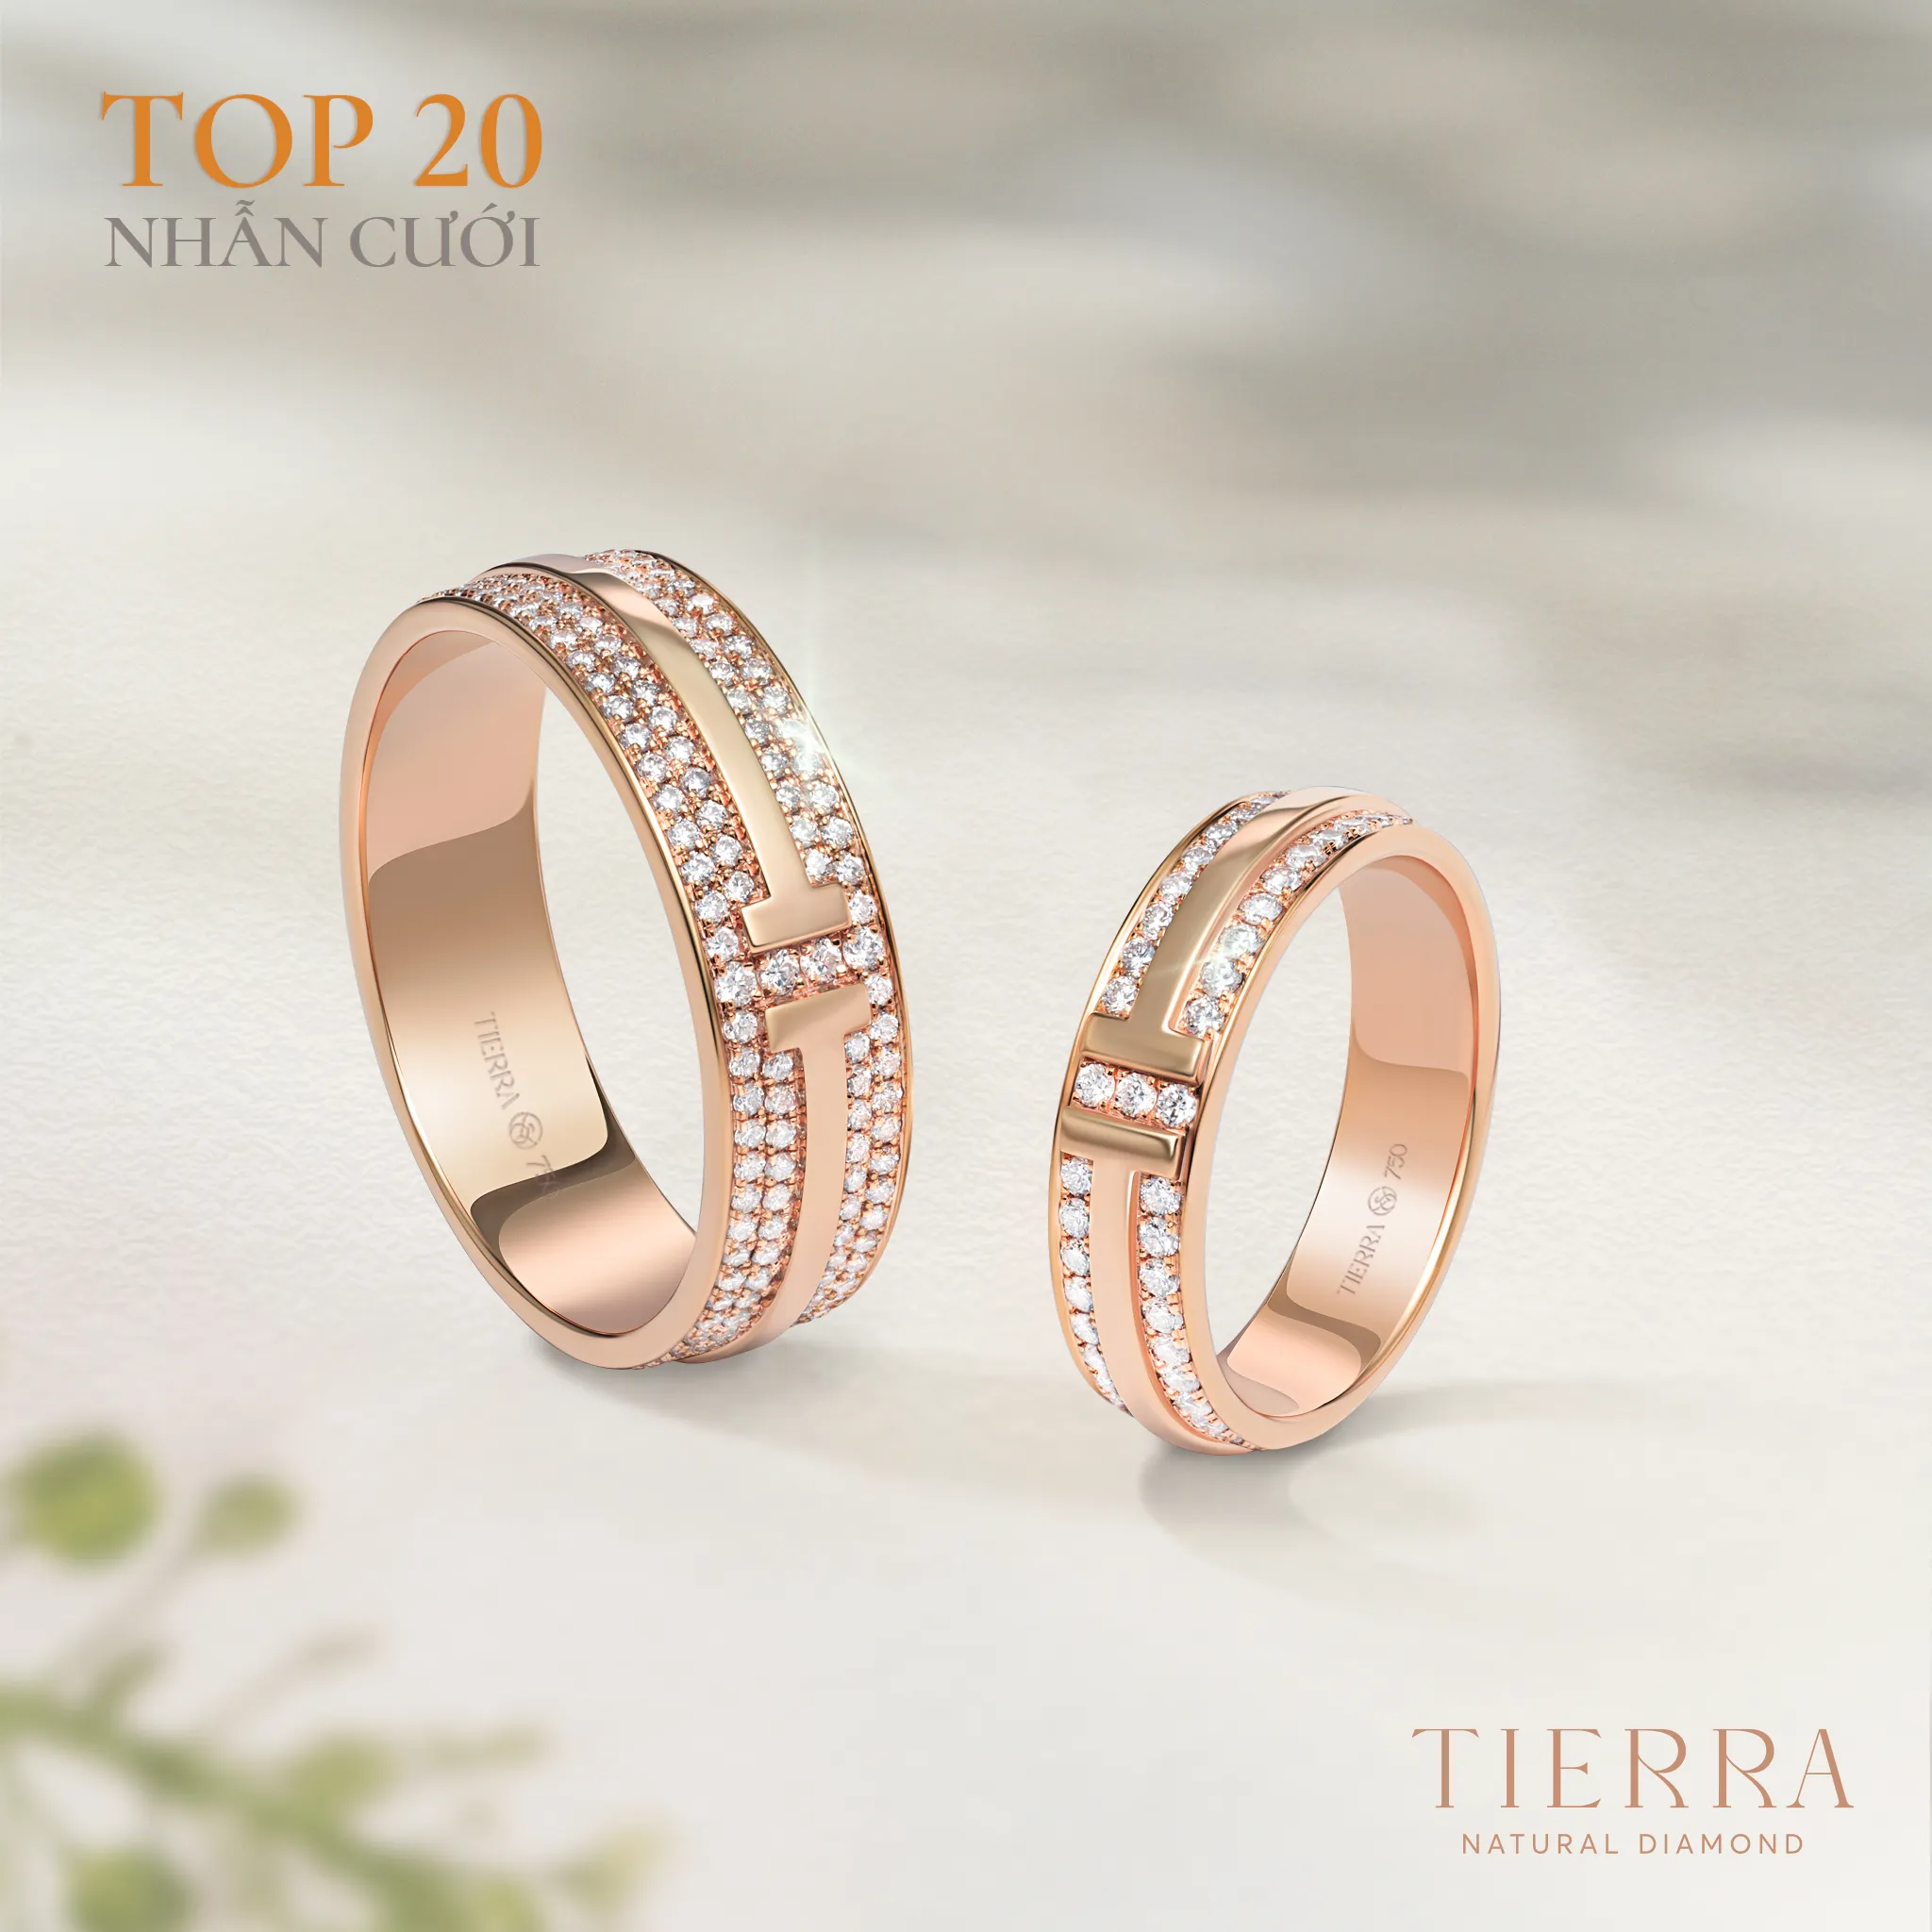 Nhẫn cưới NCC2015 thuộc “top 3” mẫu nhẫn cưới vàng hồng được ưa chuộng tại Tierra 